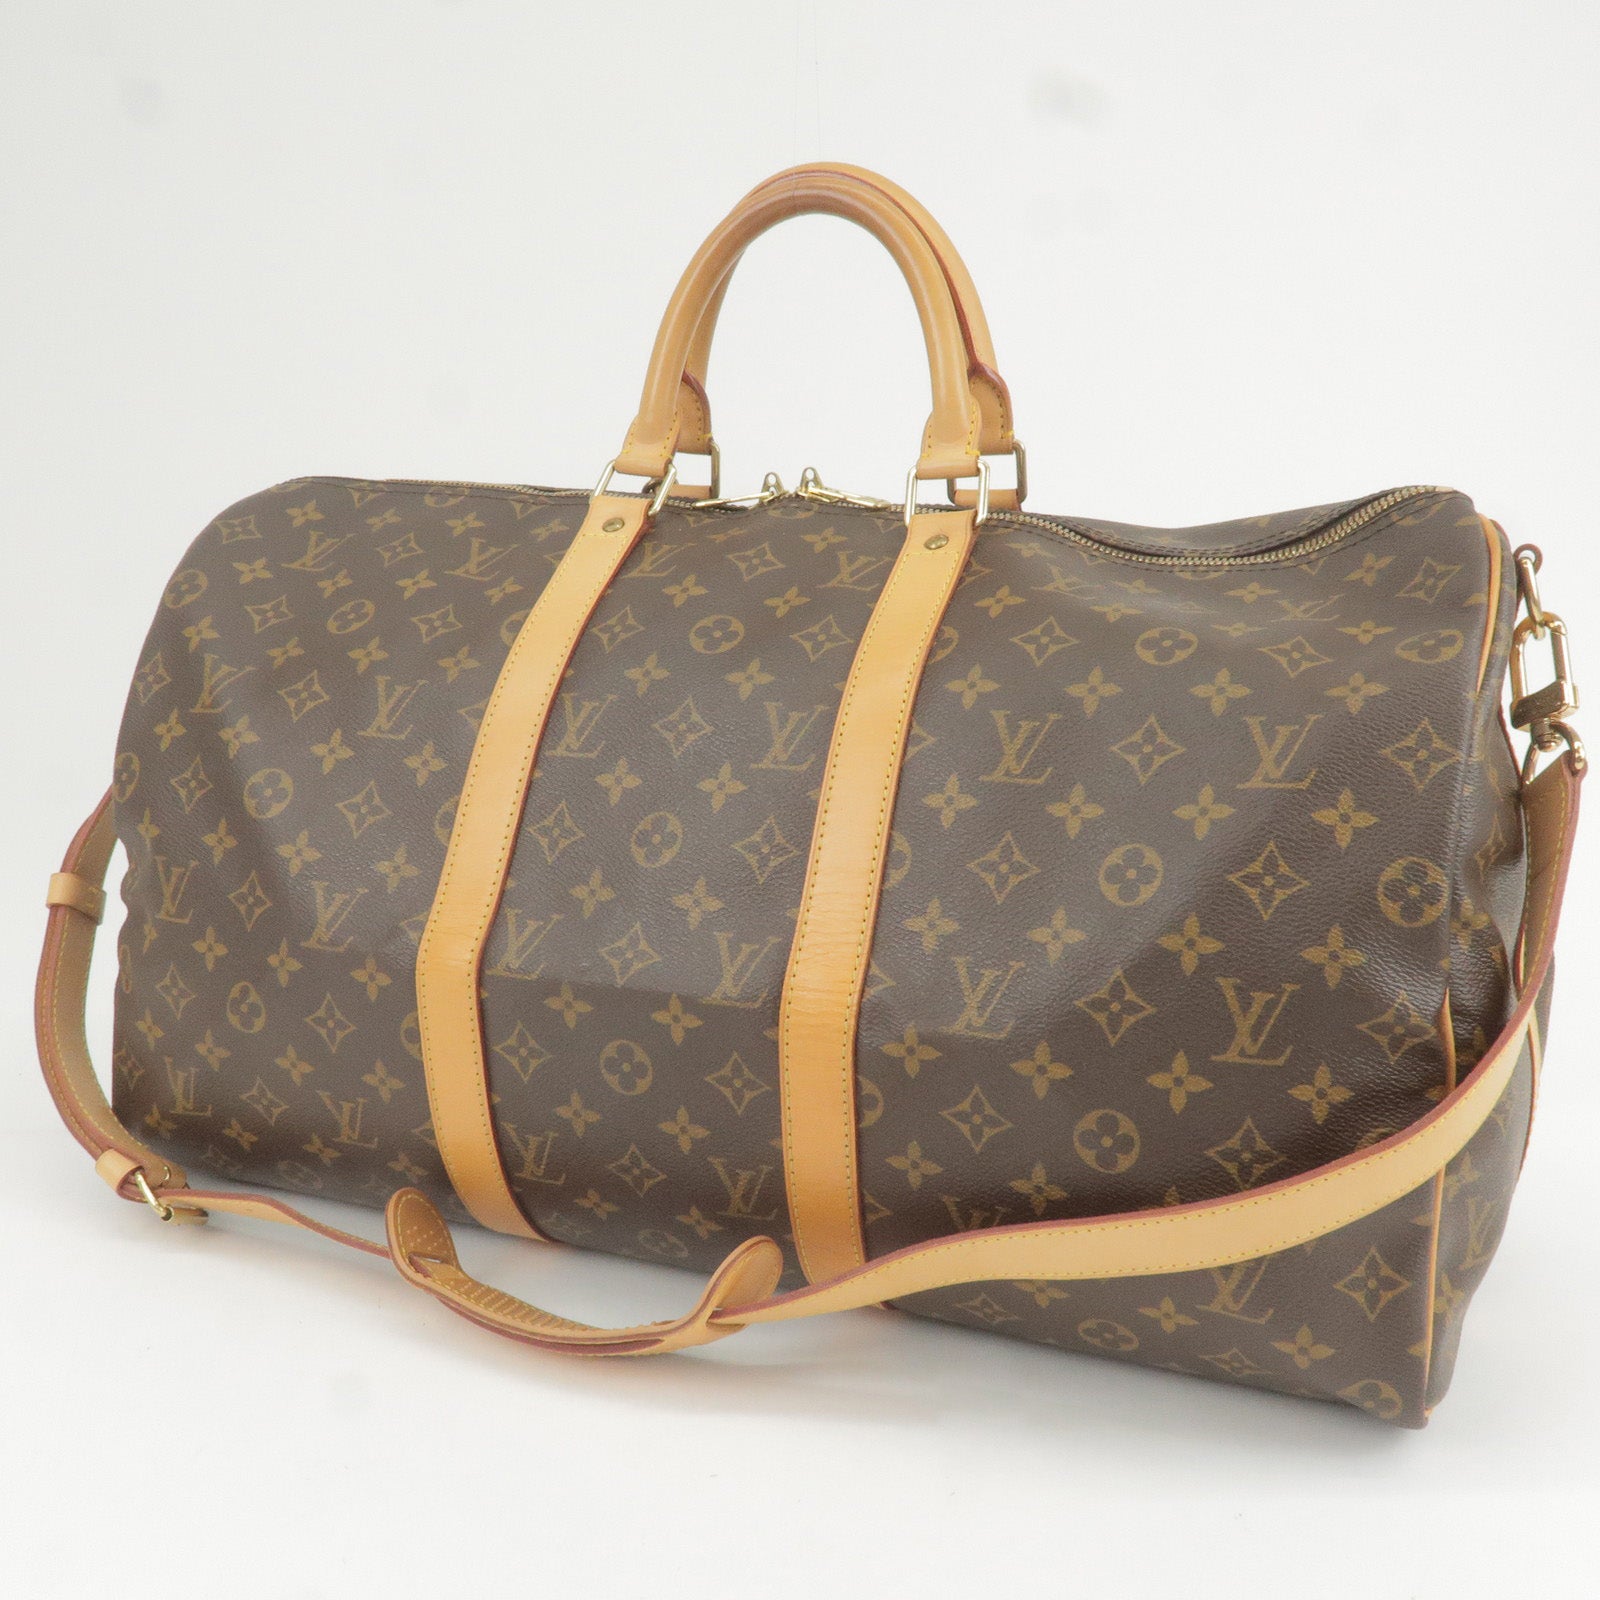 Serviette ambassadeur leather clutch bag Louis Vuitton Brown in